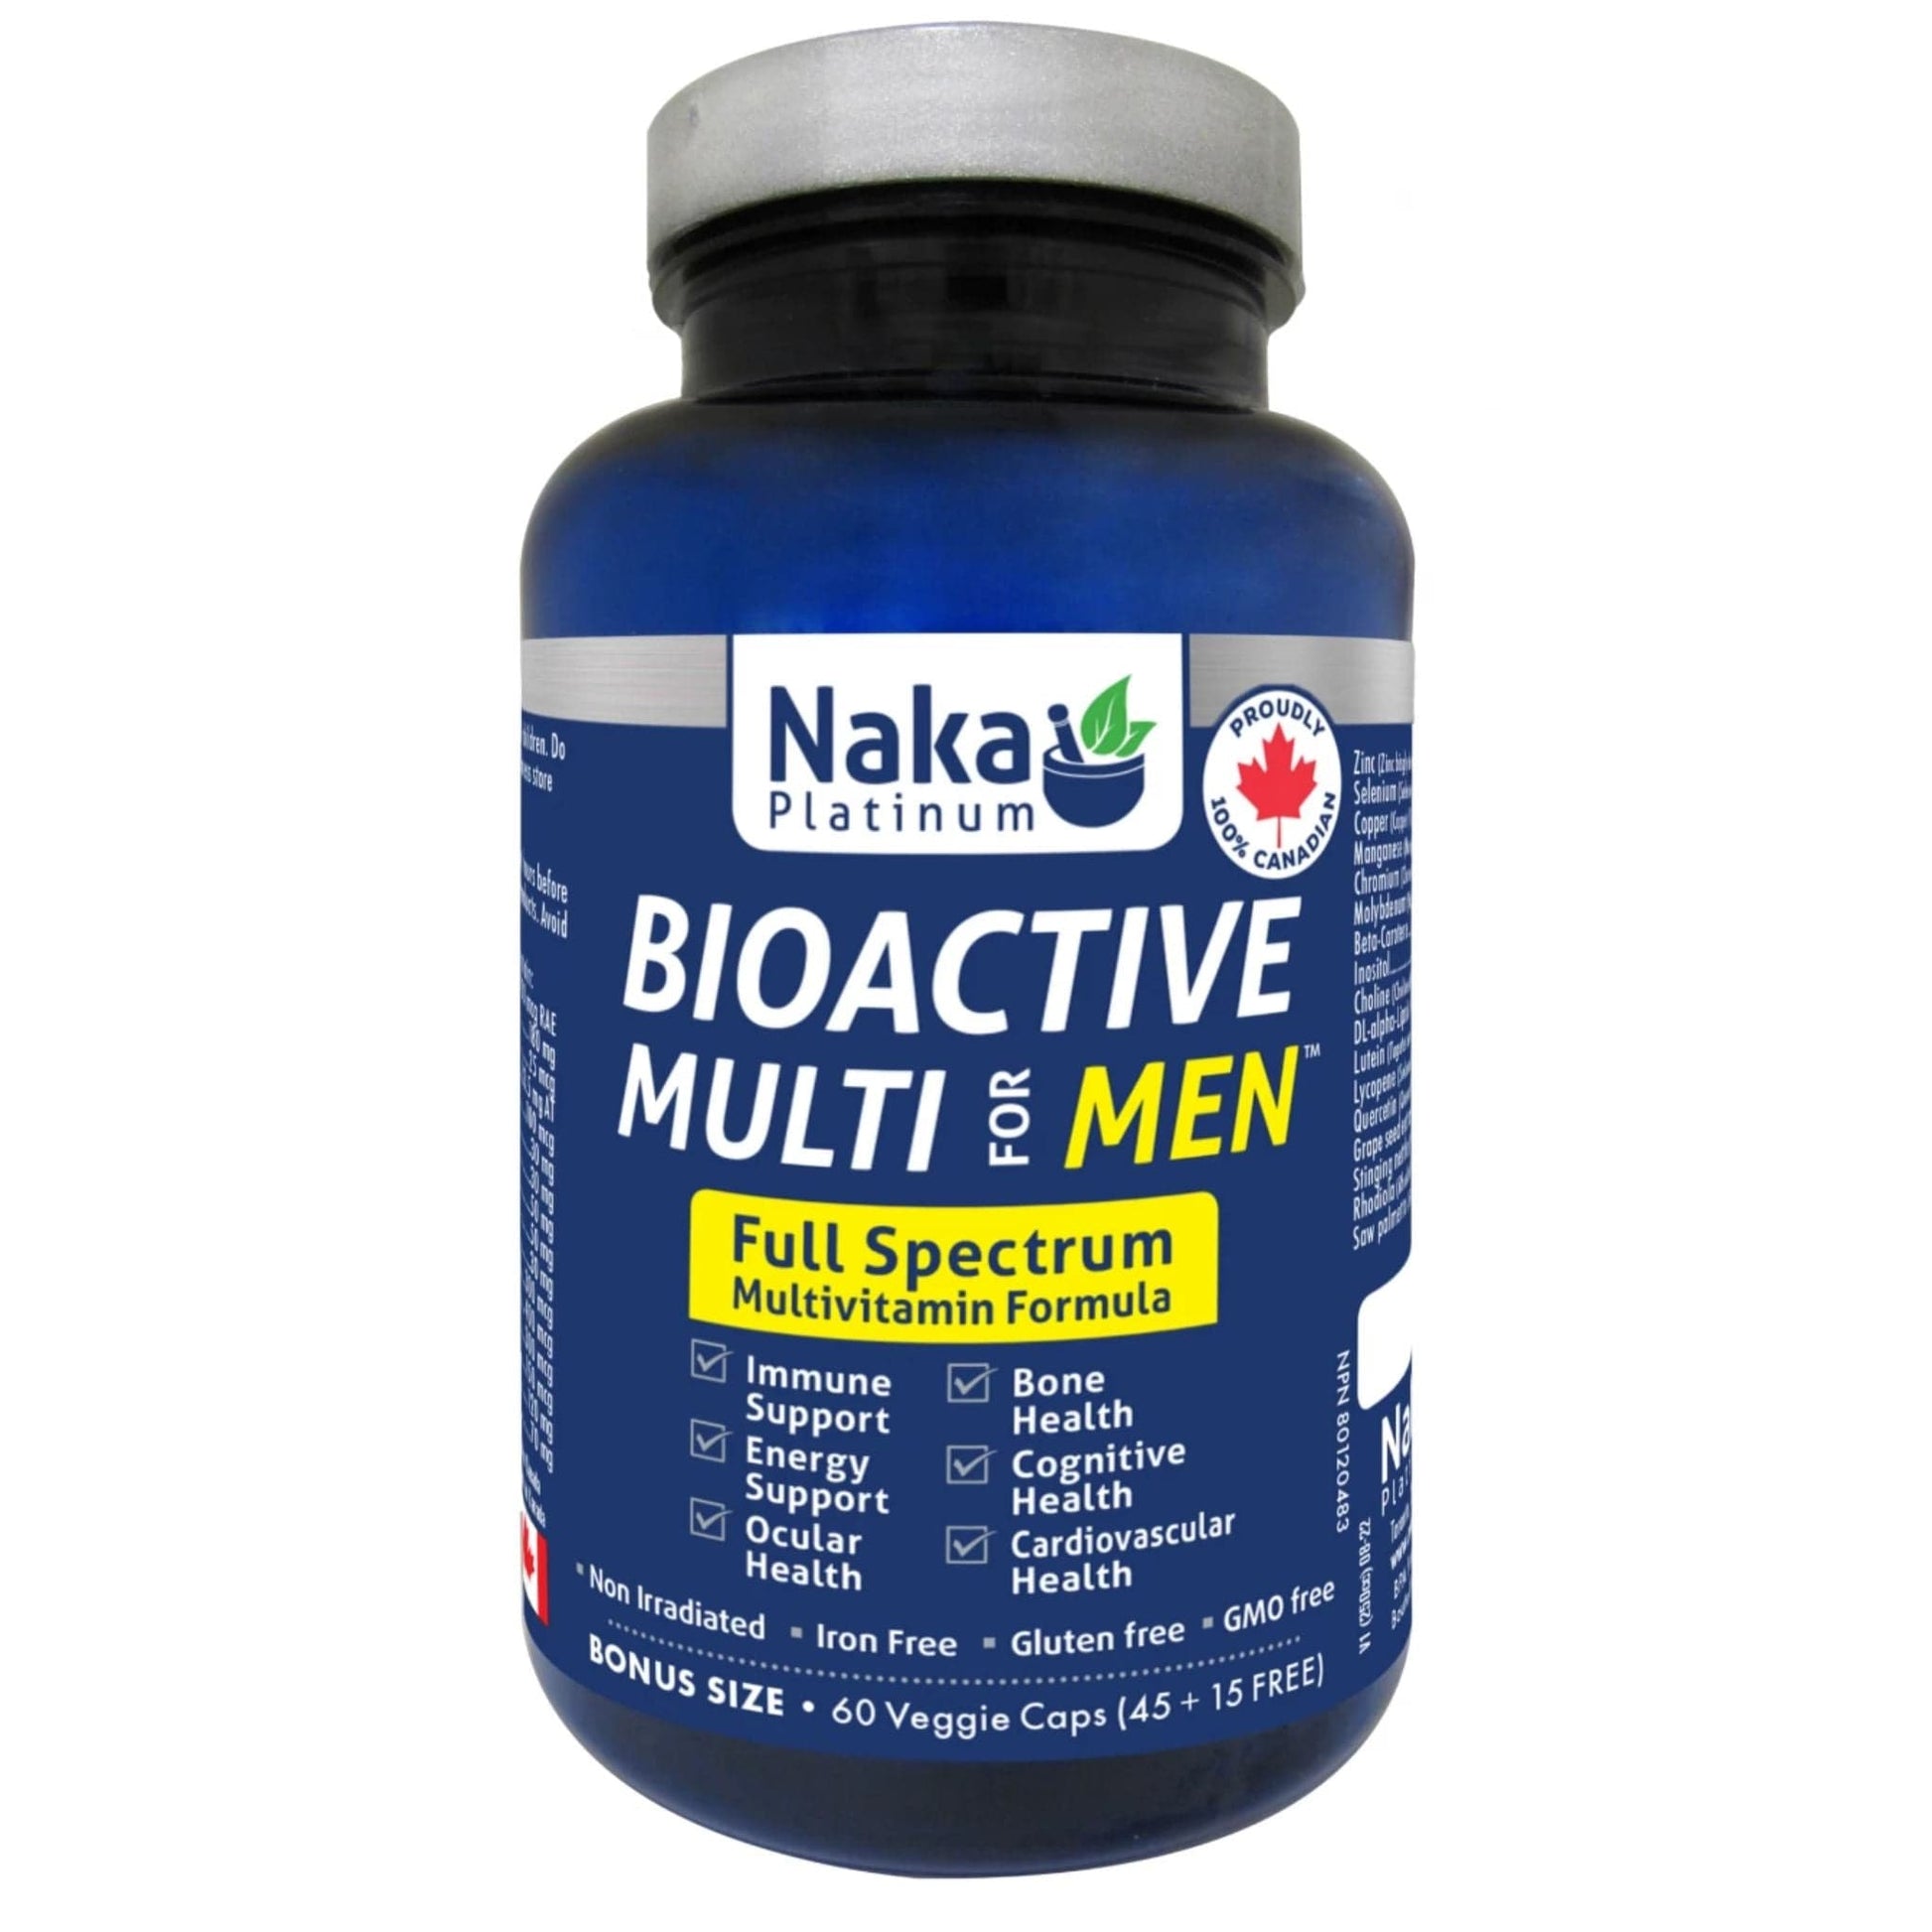 60 Vegetable Capsules | Naka Platinum BioActive Multi for Men Full Spectrum Multivitamin bottle